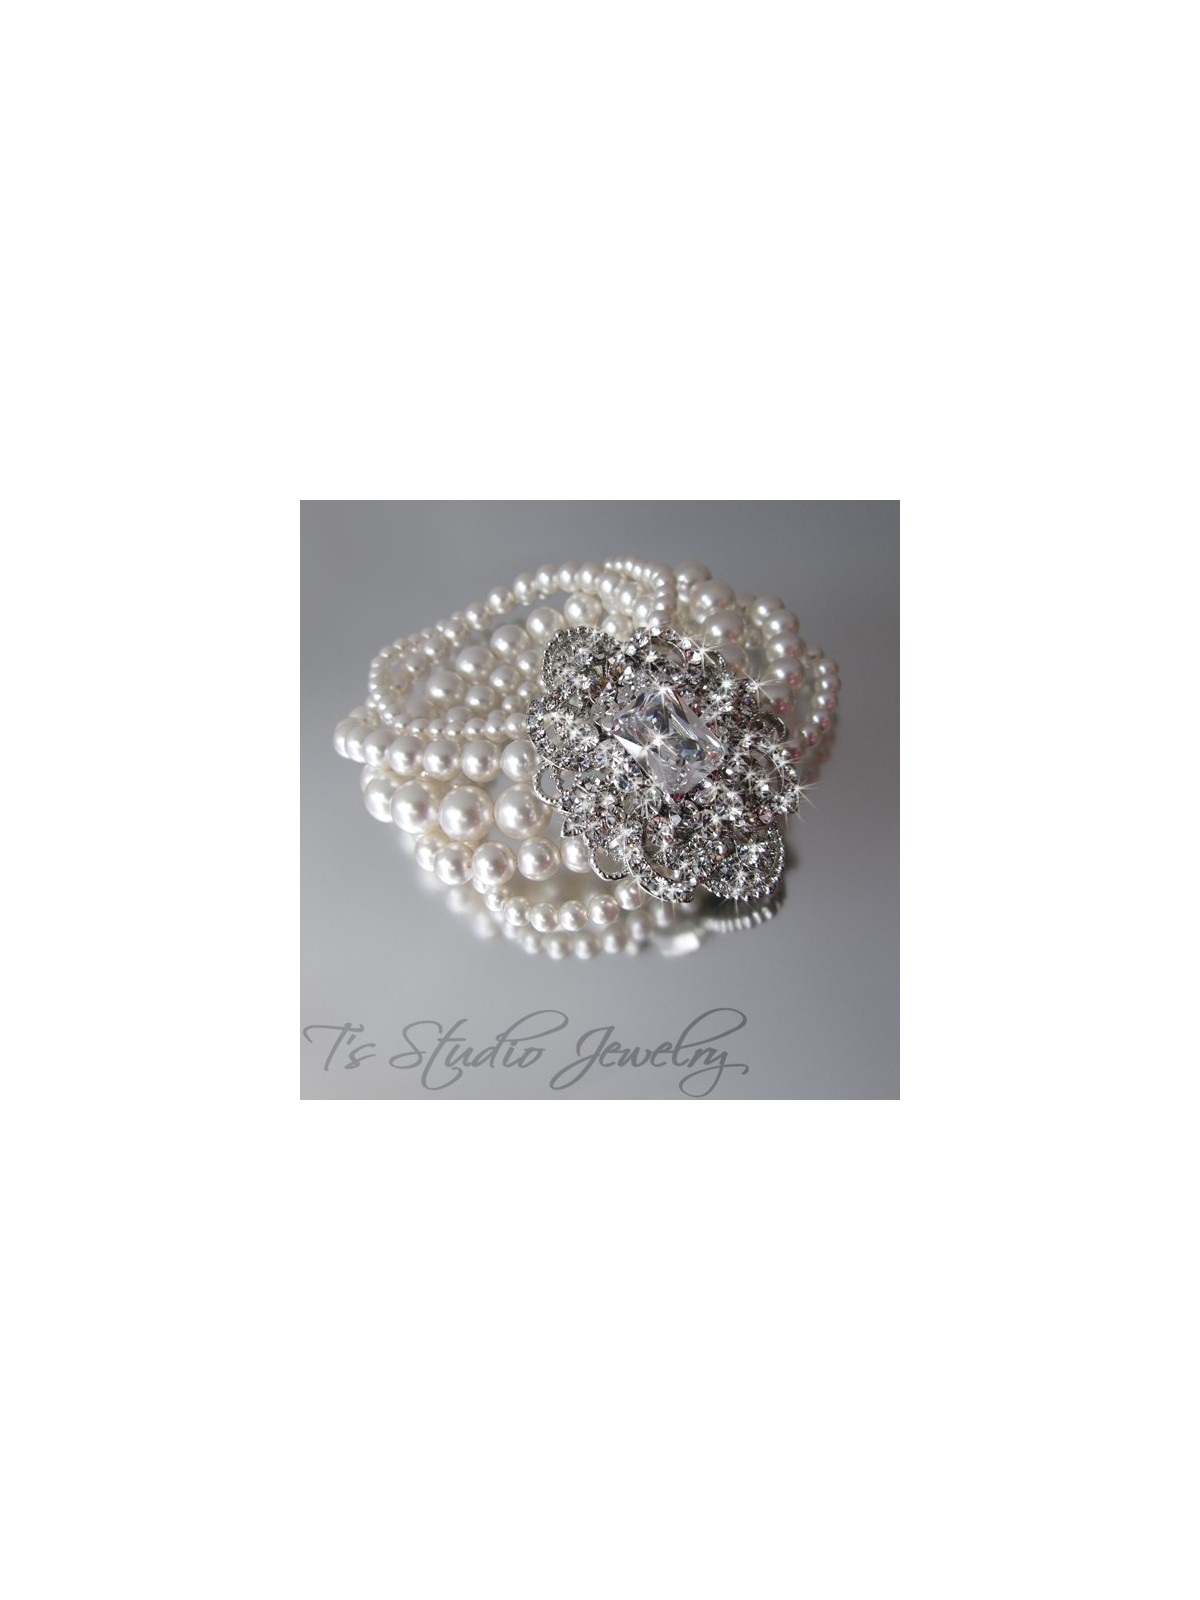 Pearl Cuff Bridal Wedding Bracelet